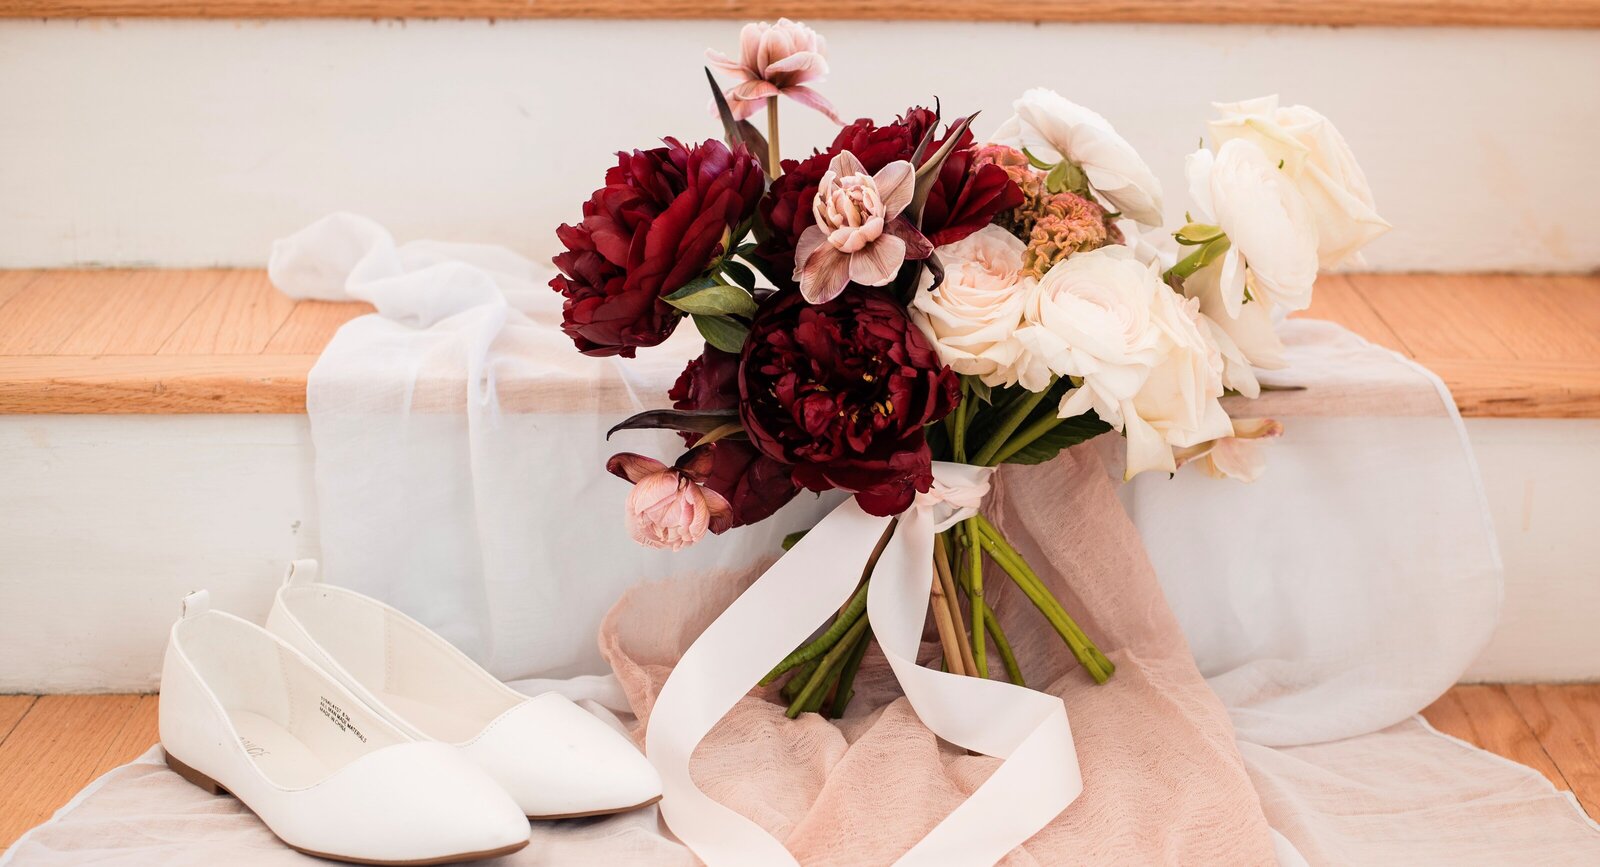 Intimate wedding brooklyn manhattan nyc ramscale studios wedding bouquet